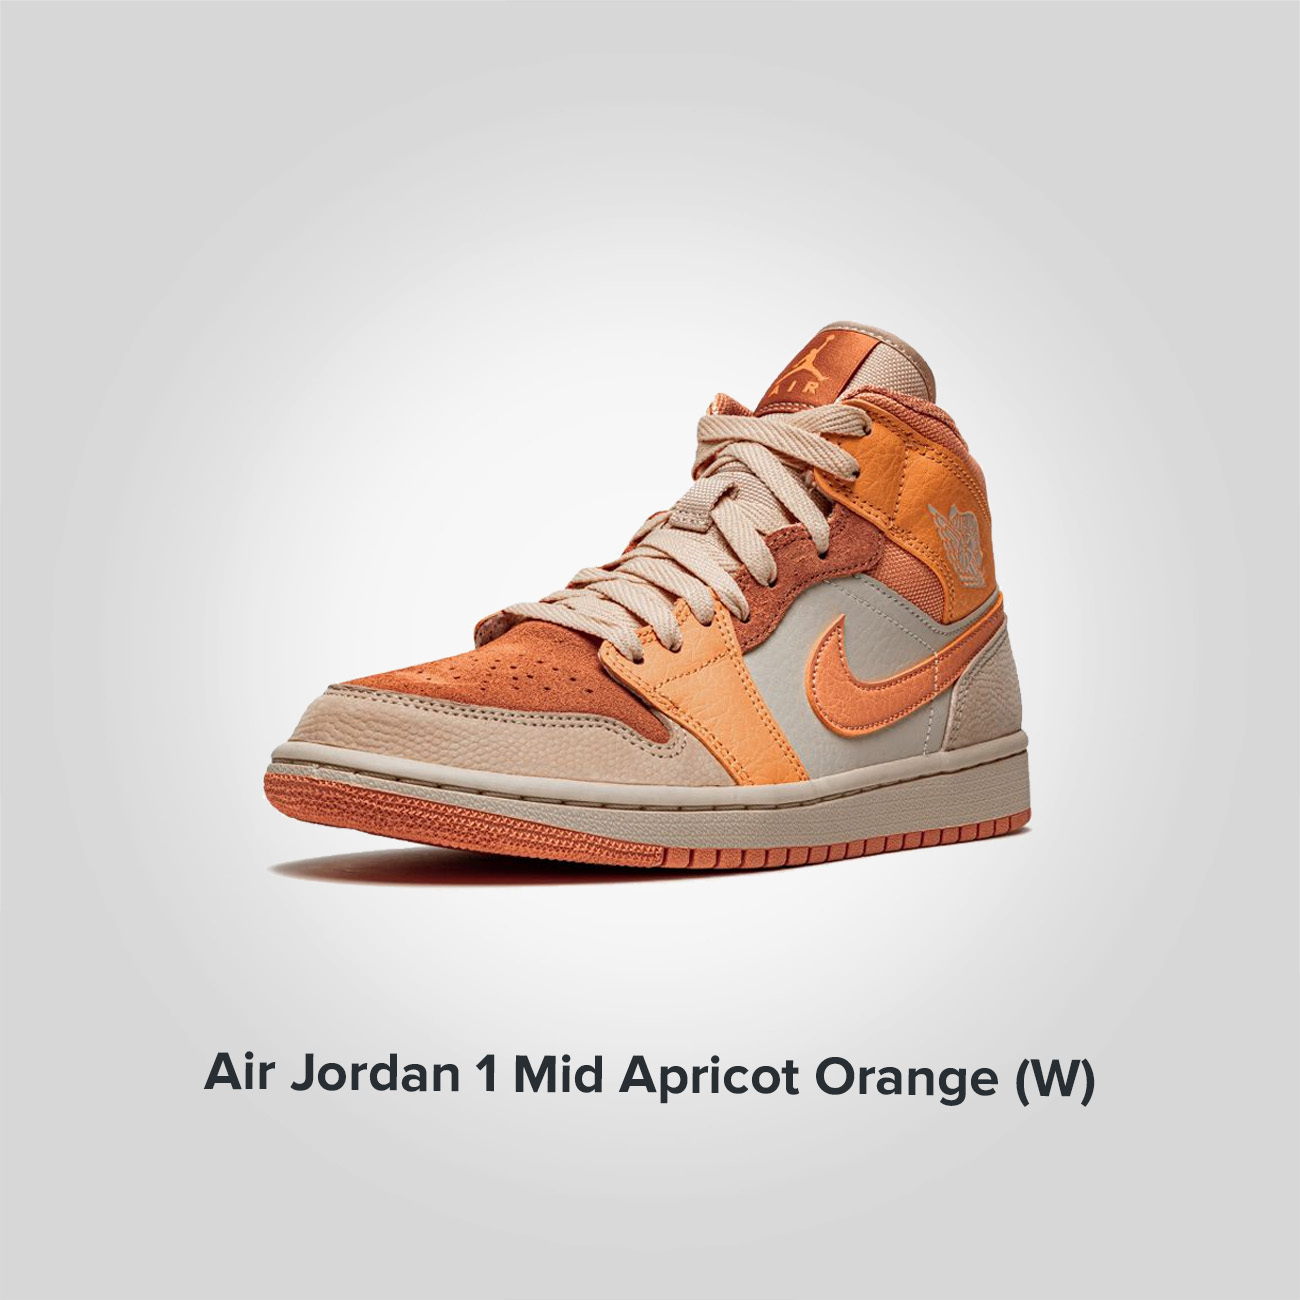 Jordan 1 Mid Apricot Orange (W)